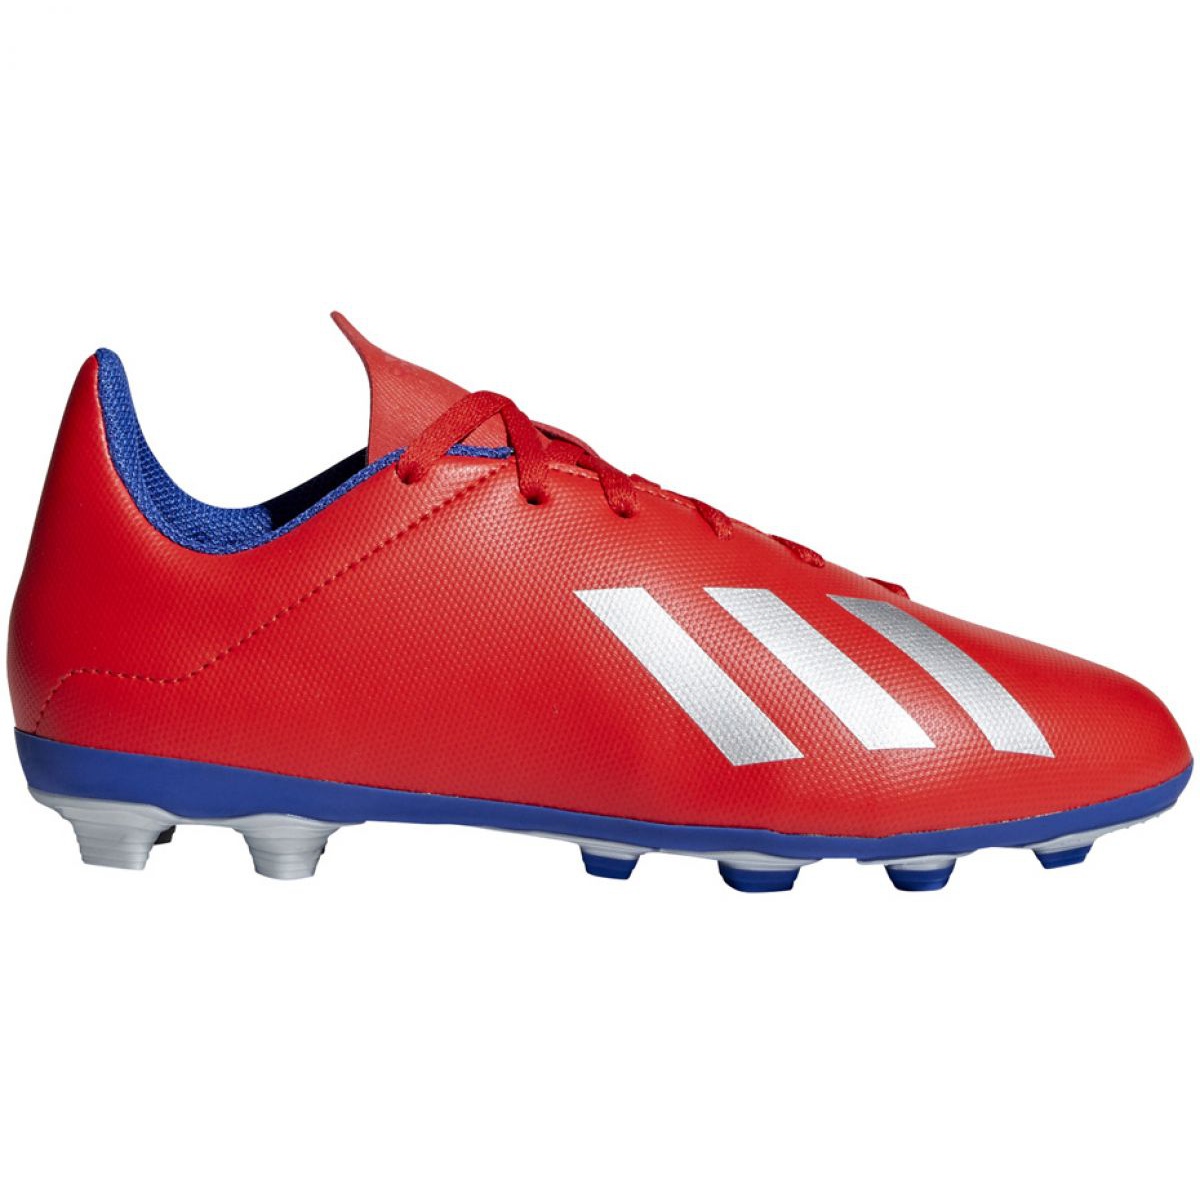 Buty piłkarskie adidas X 18.4 FxG Jr BB9379 czerwone wielokolorowe